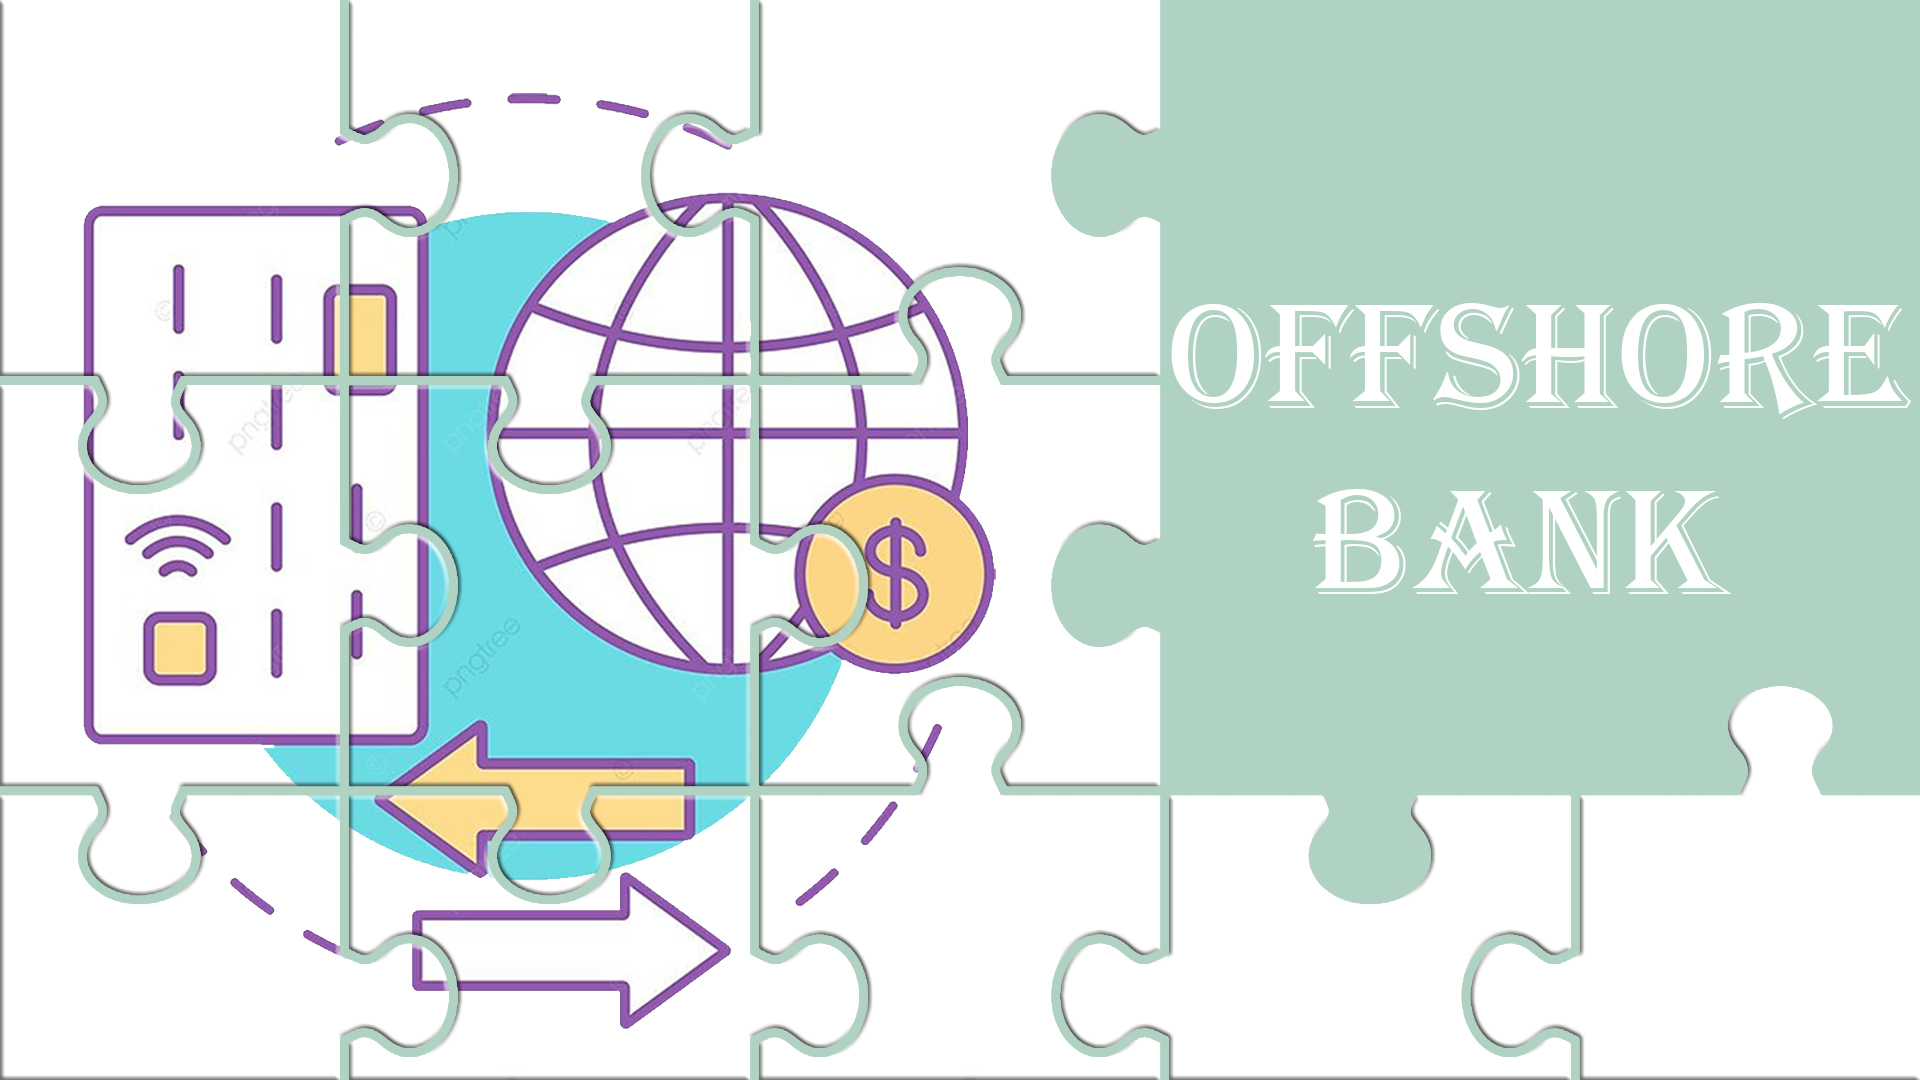 آفشور بانک (Offshore Bank)